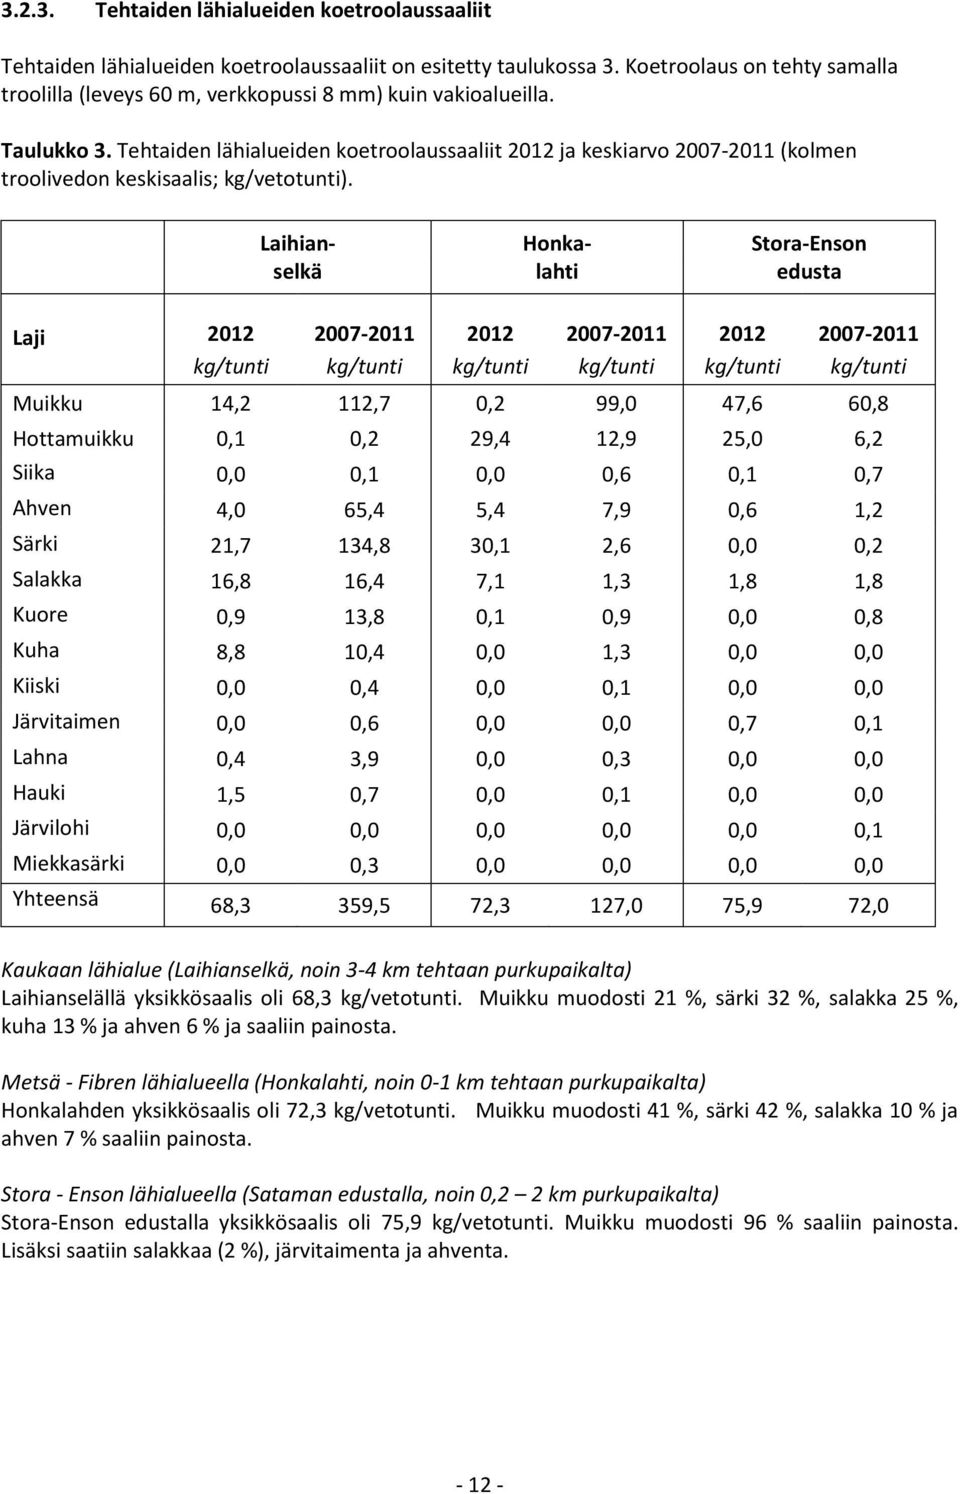 Tehtaiden lähialueiden koetroolaussaaliit 2012 ja keskiarvo 2007-2011 (kolmen troolivedon keskisaalis; kg/vetotunti).